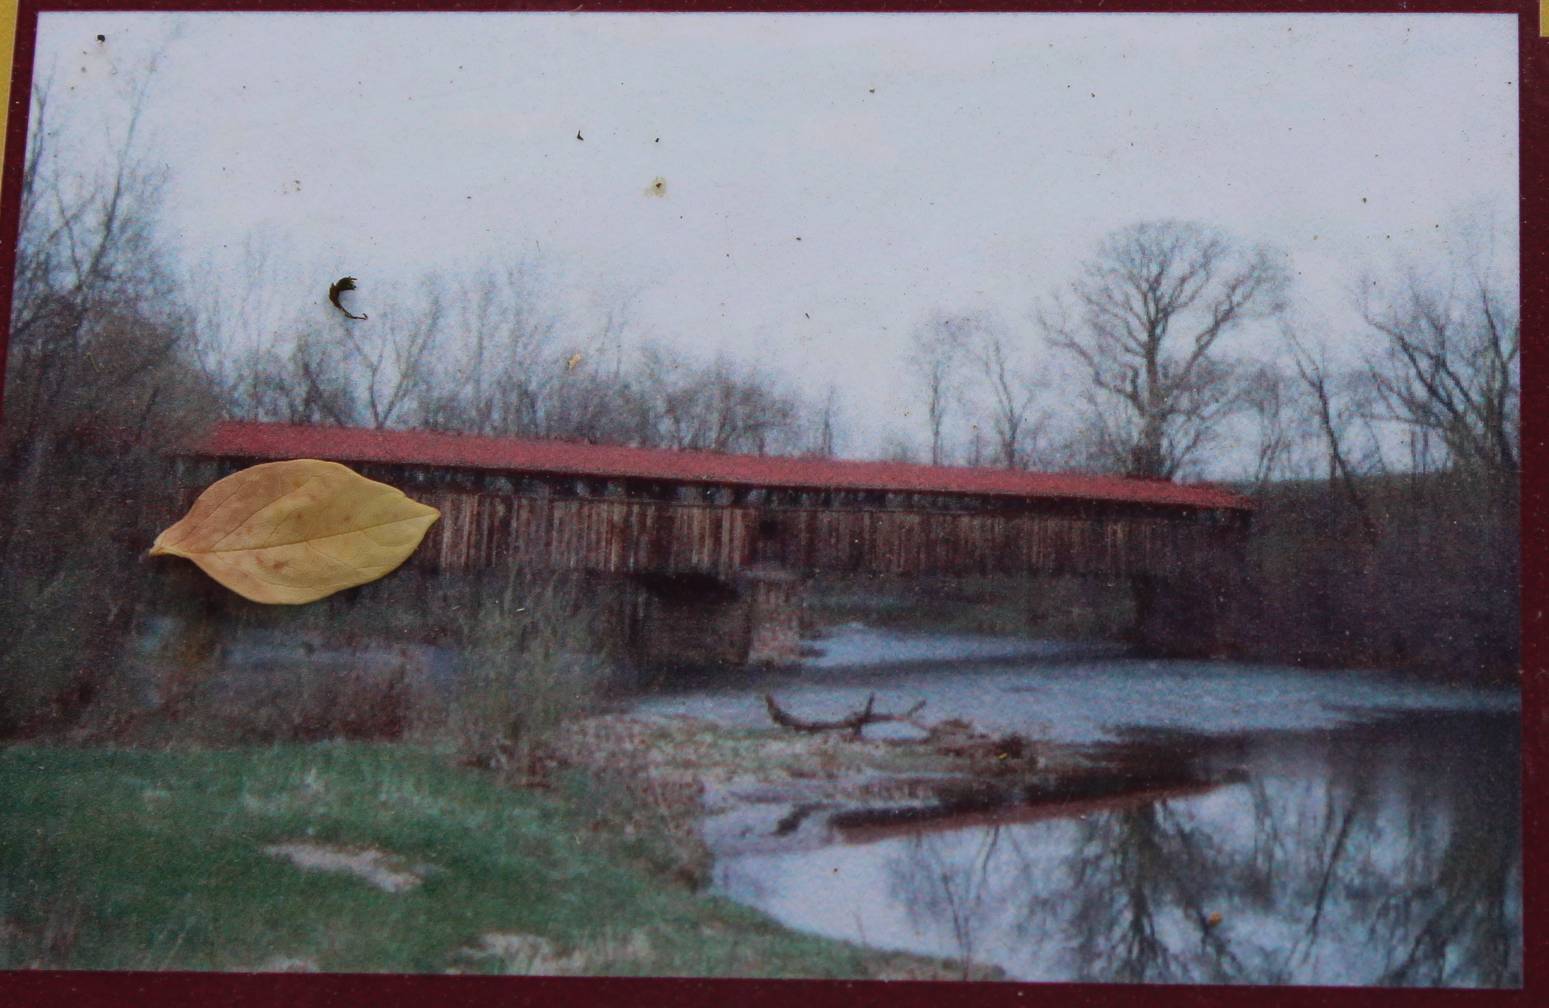  Academia Pomeroy Covered Bridge